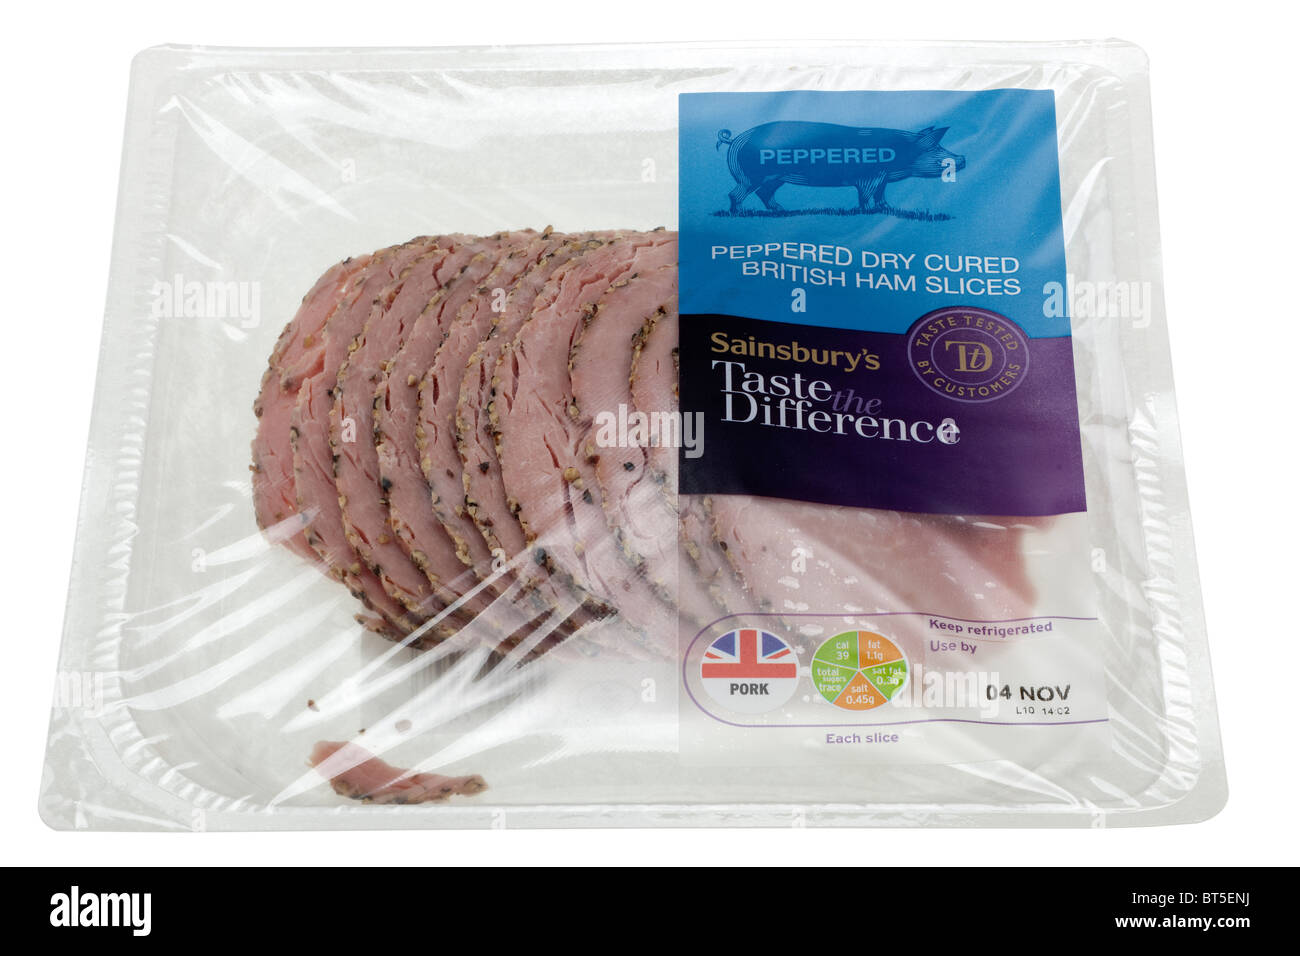 Sainsburys saborear la diferencia salpicado curado en seco lonchas británico en un paquete sellado de celofán Foto de stock